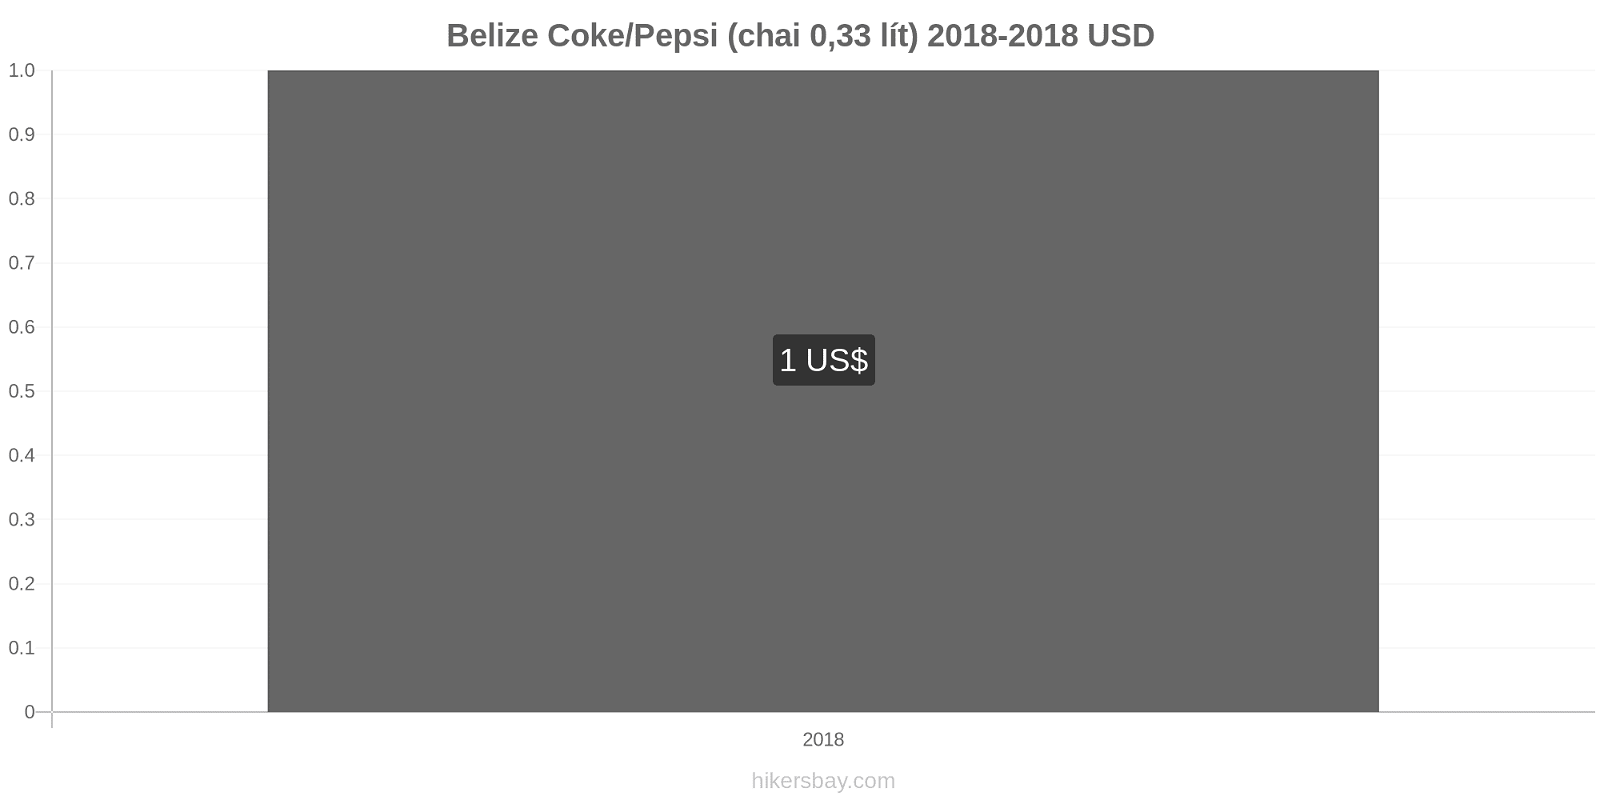 Belize thay đổi giá cả Coca-Cola/Pepsi (chai 0.33 lít) hikersbay.com